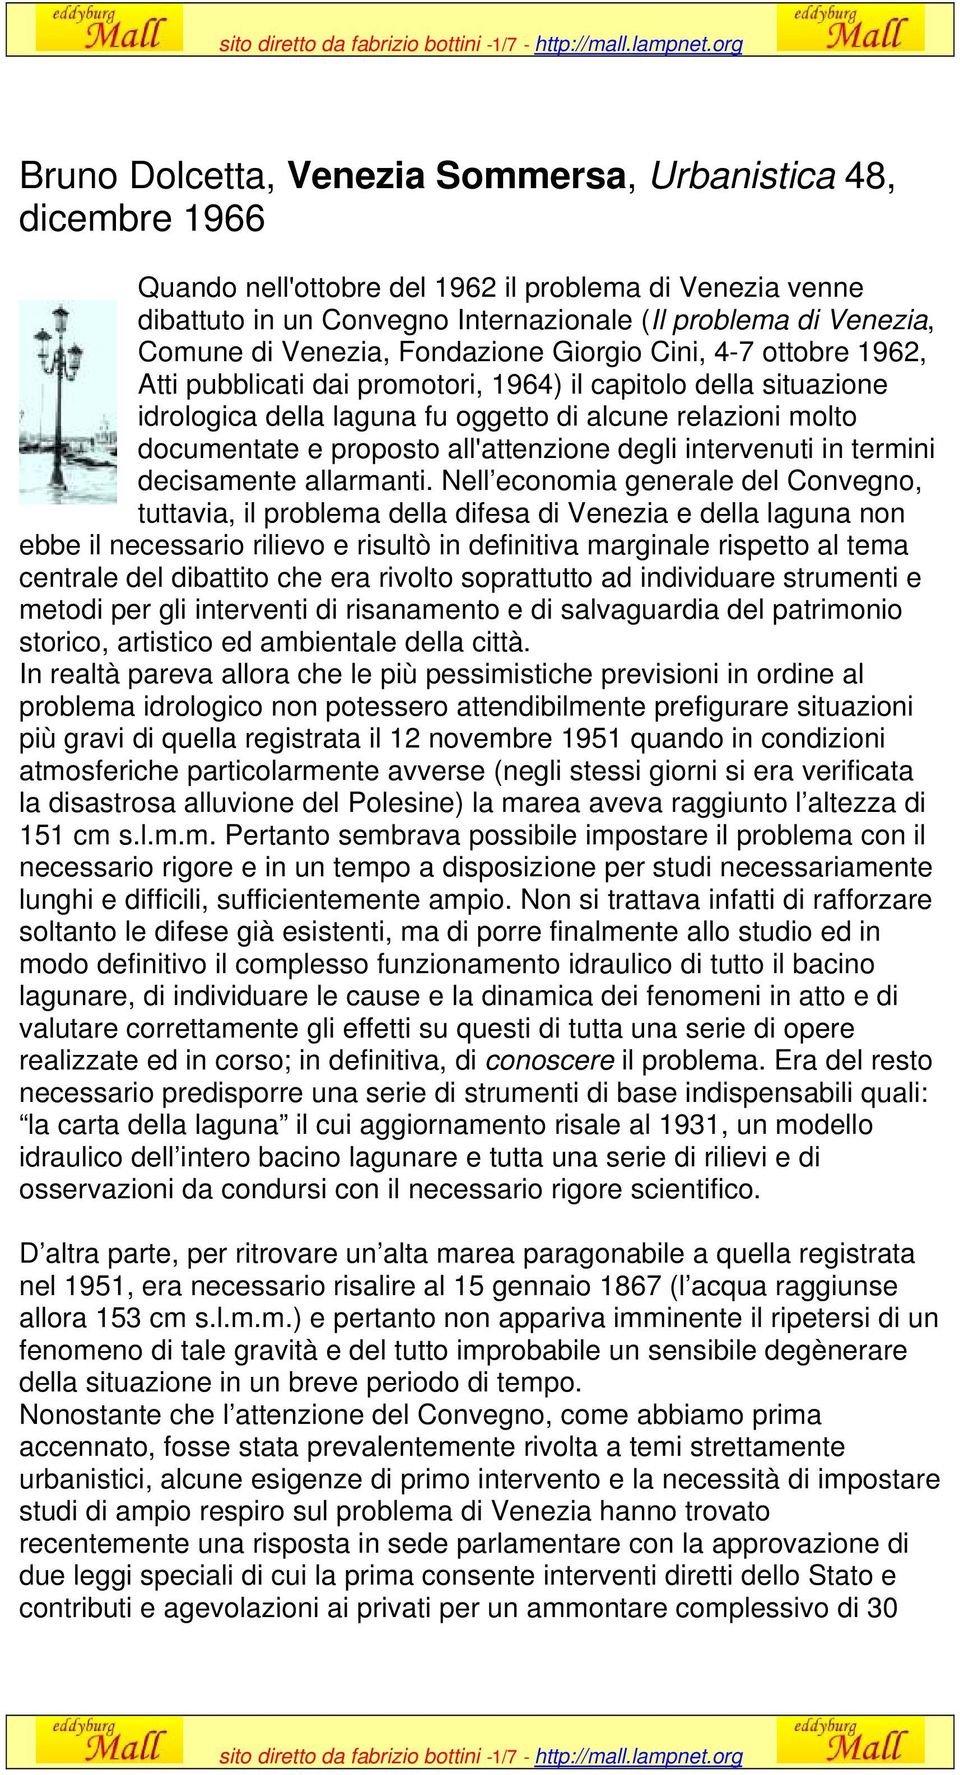 di Venezia, Fondazione Giorgio Cini, 4-7 ottobre 1962, Atti pubblicati dai promotori, 1964) il capitolo della situazione idrologica della laguna fu oggetto di alcune relazioni molto documentate e